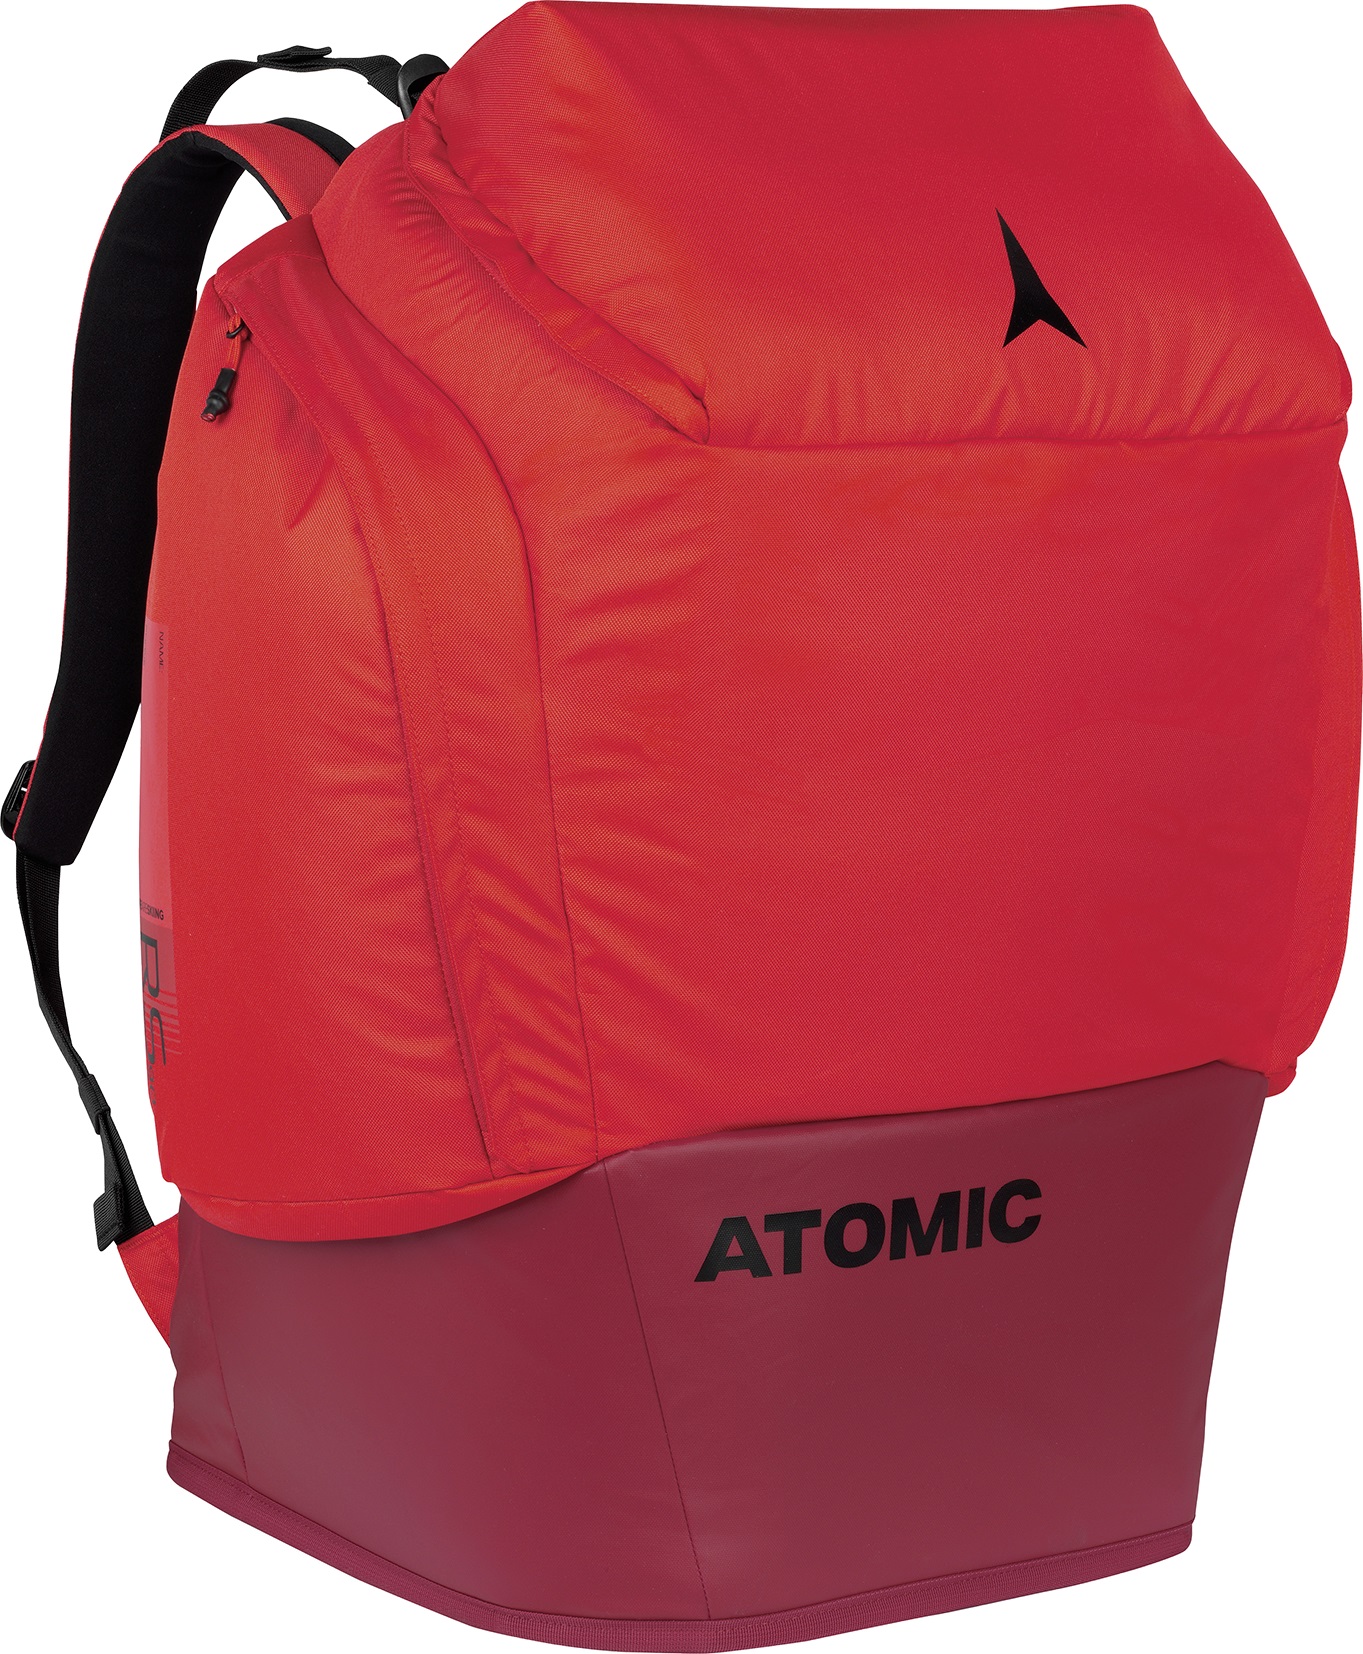 ATOMIC RS PACK 90 Liter Skirucksack Ausrüstungstasche Equipmenttasche